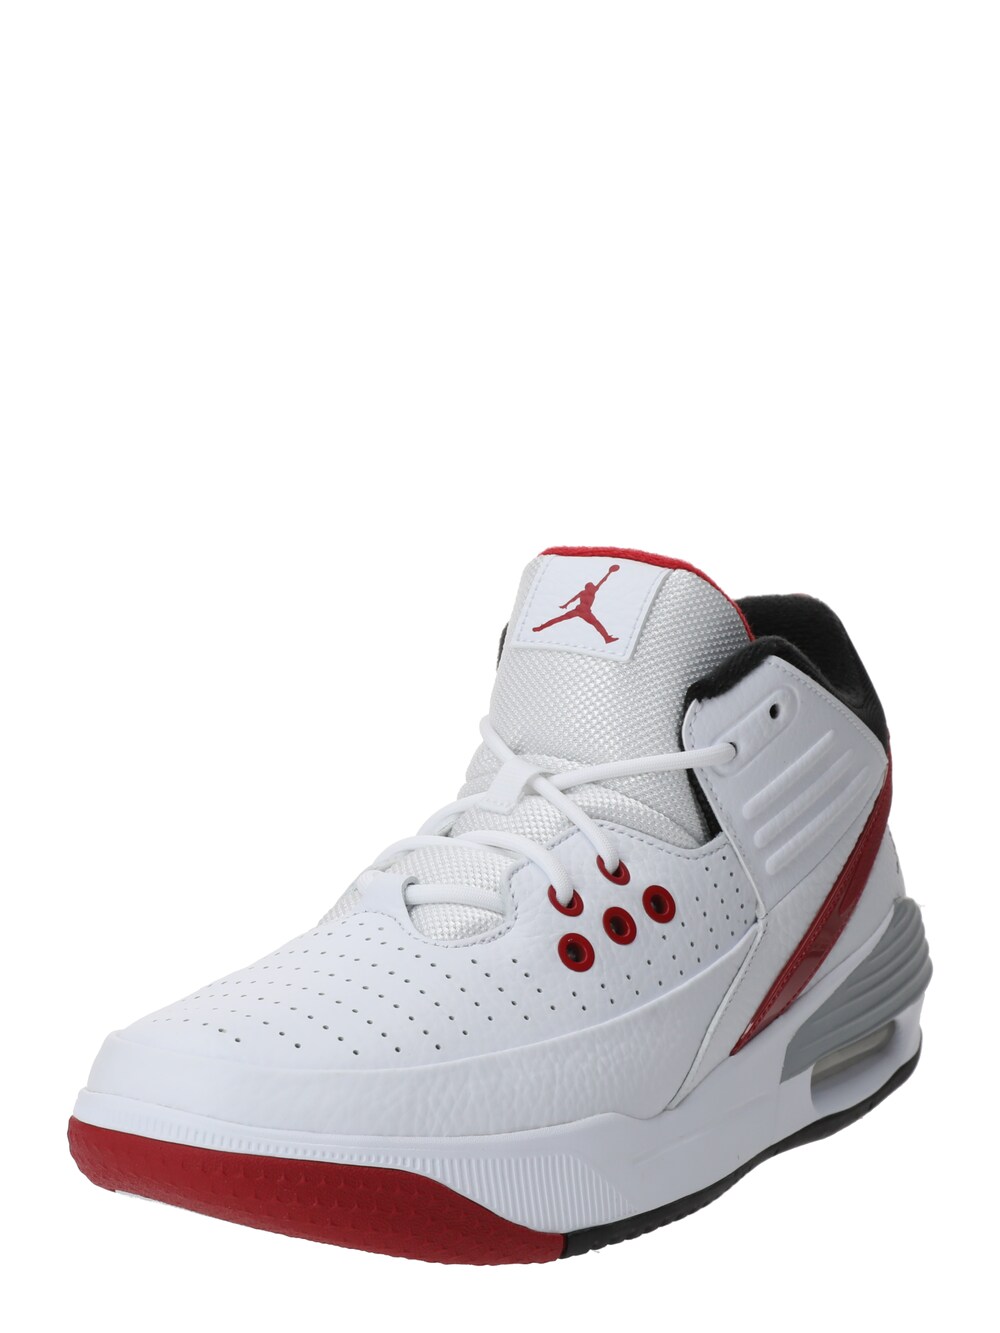 Высокие кроссовки Jordan Max Aura 5, белый высокие кроссовки jordan max aura 5 черный университетский красный